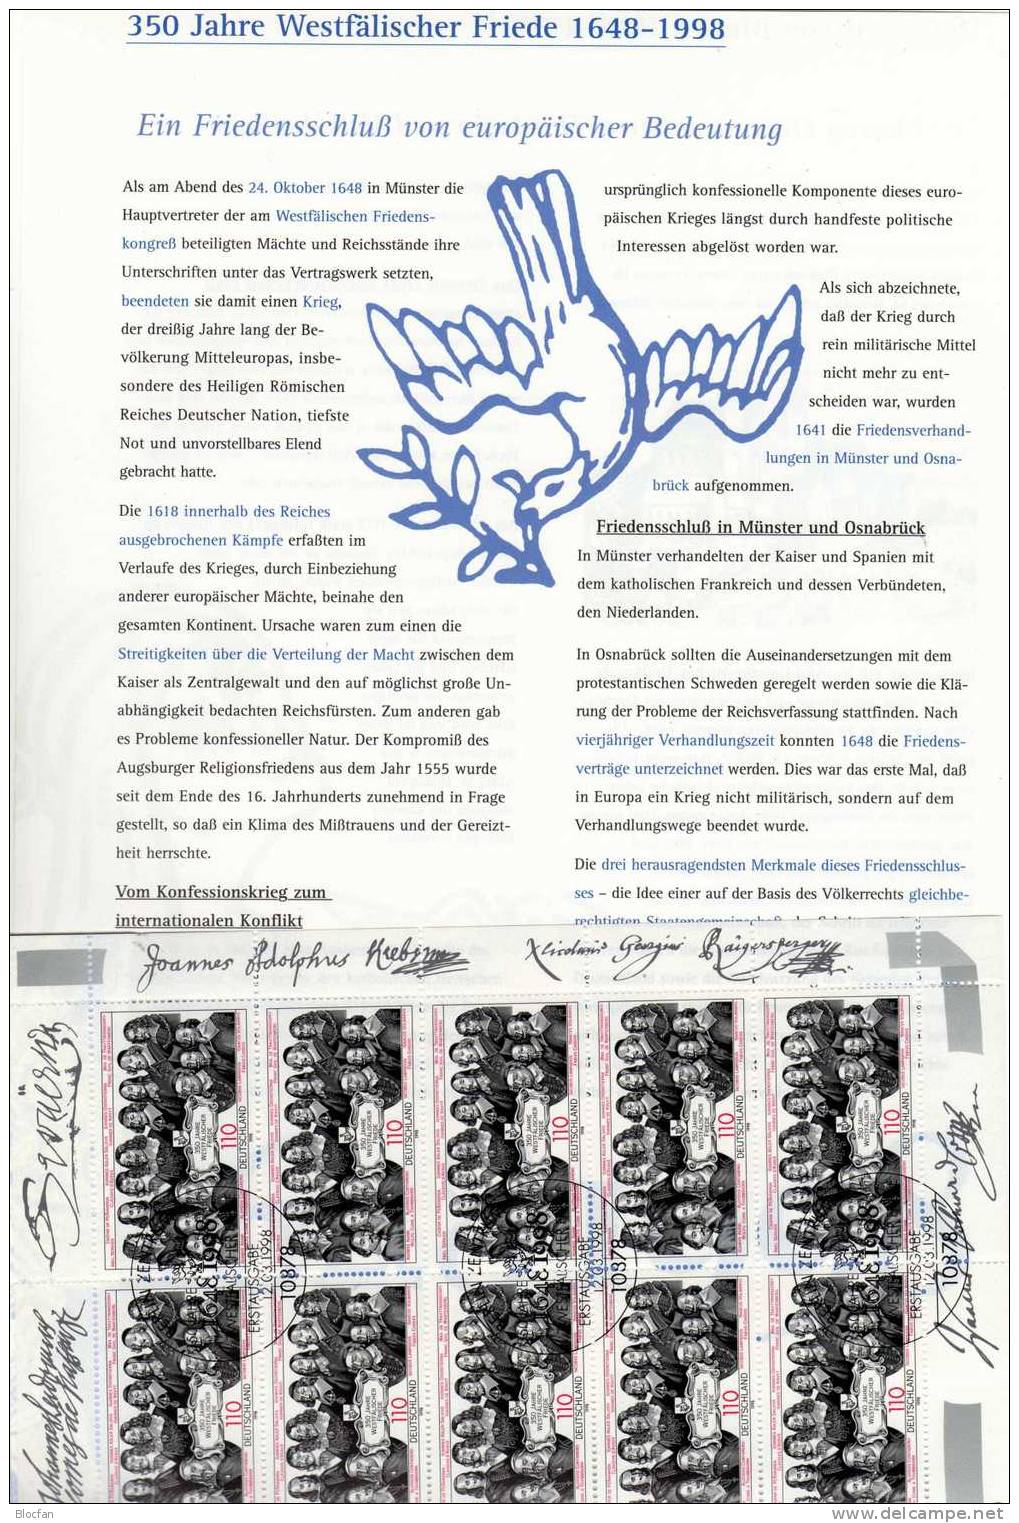 Westfälischer Friede 1998 Reichsstände BRD 1998 10-Kleinbogen SST 12€ Gesandter Hoja Bloc Ms History Sheetlet Bf Germany - Vor- Und Frühgeschichte